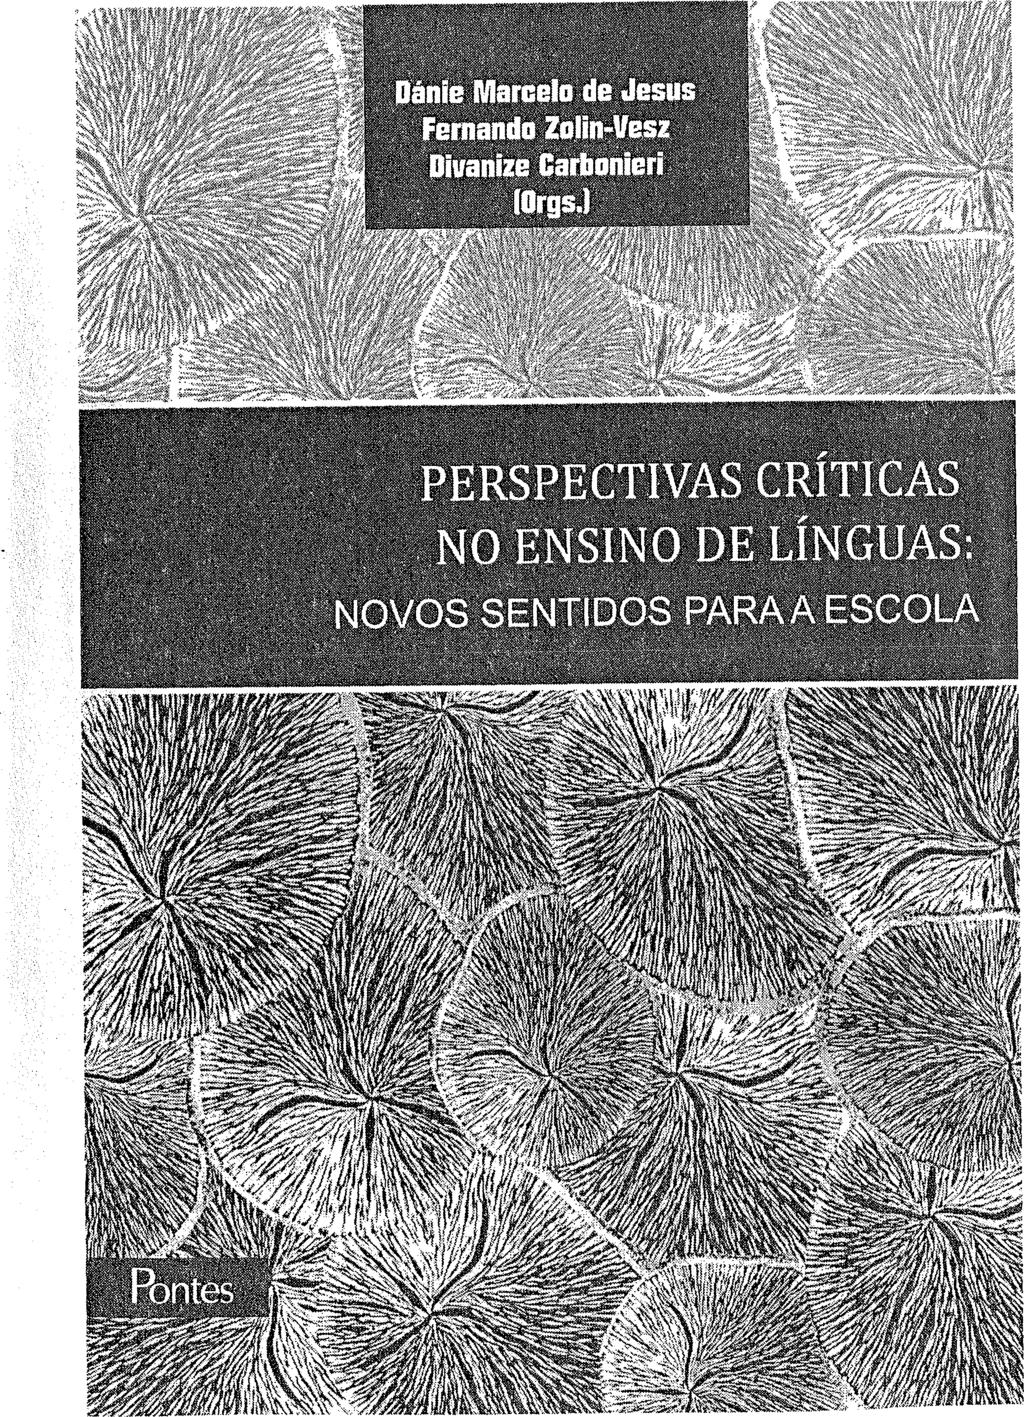 Dados Internacionais de Catalogação na Publicação (CIP) Jesus, Dánie Marcelo de. / Zolin-Vesz, Fernando./ Carbonieri, Divanize. (Orgs.